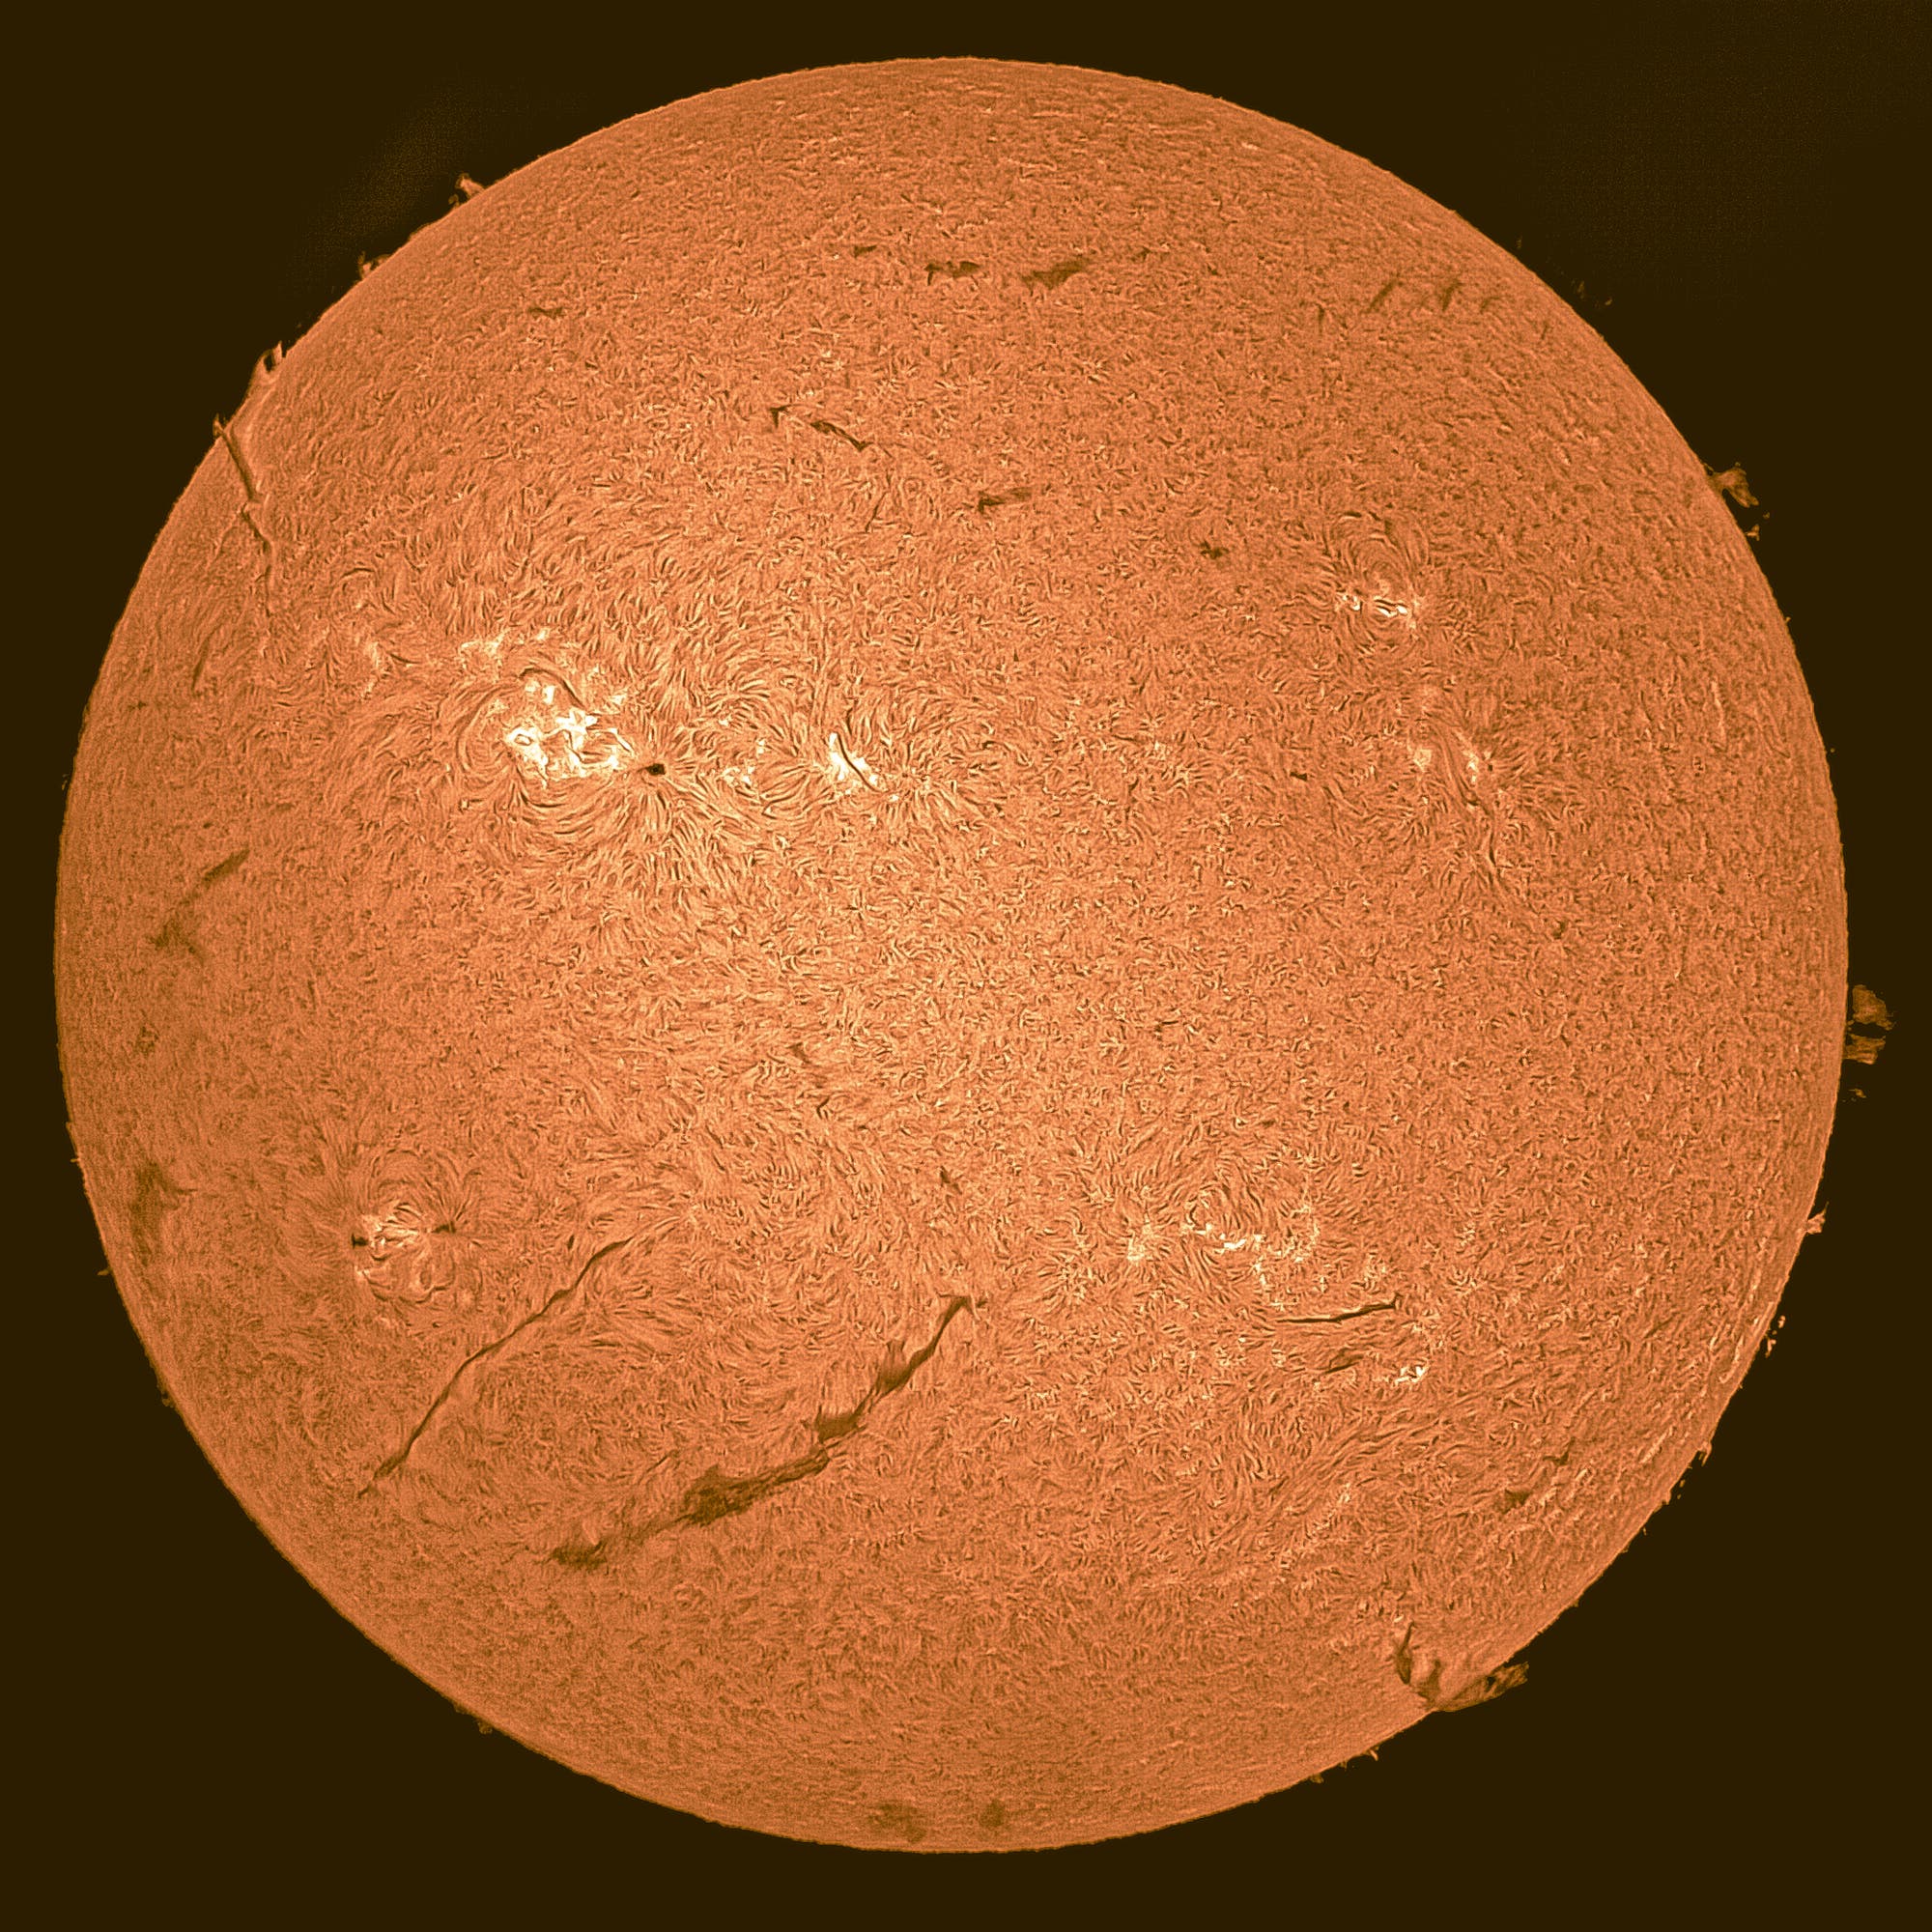 H-Alpha-Sonnenaufnahme am 9. Juli 2022